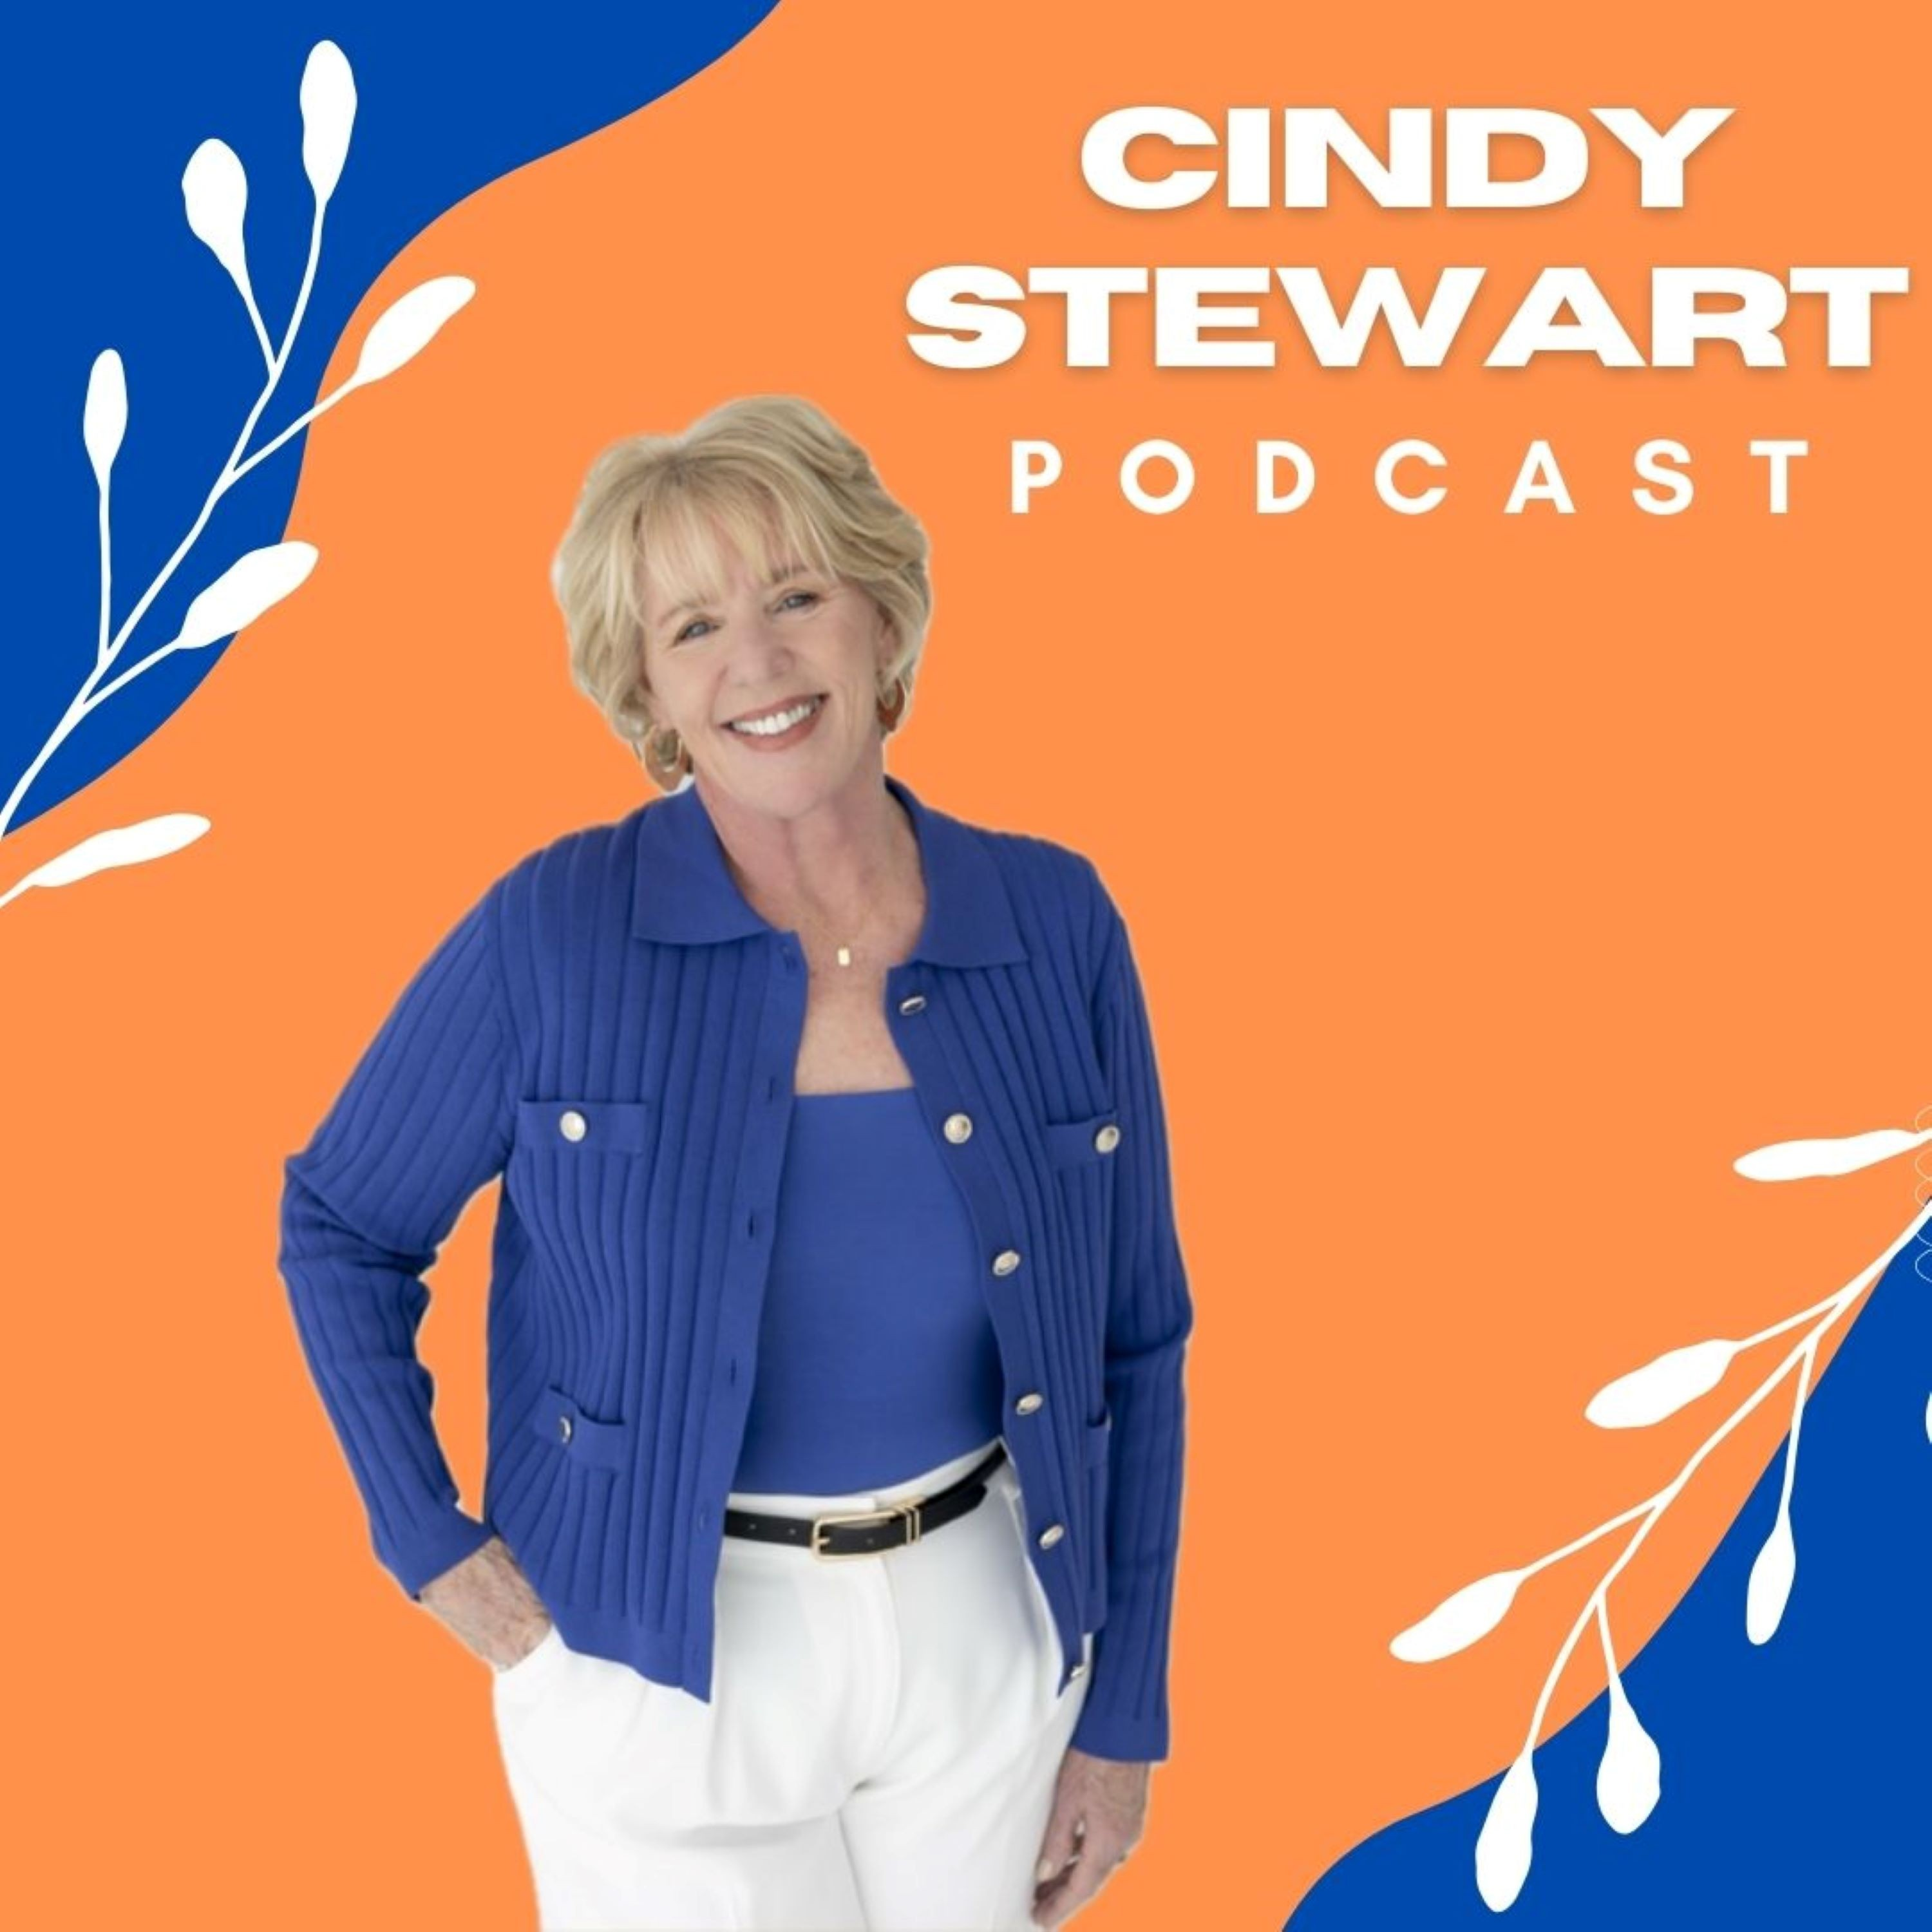 Cindy Stewart Podcast